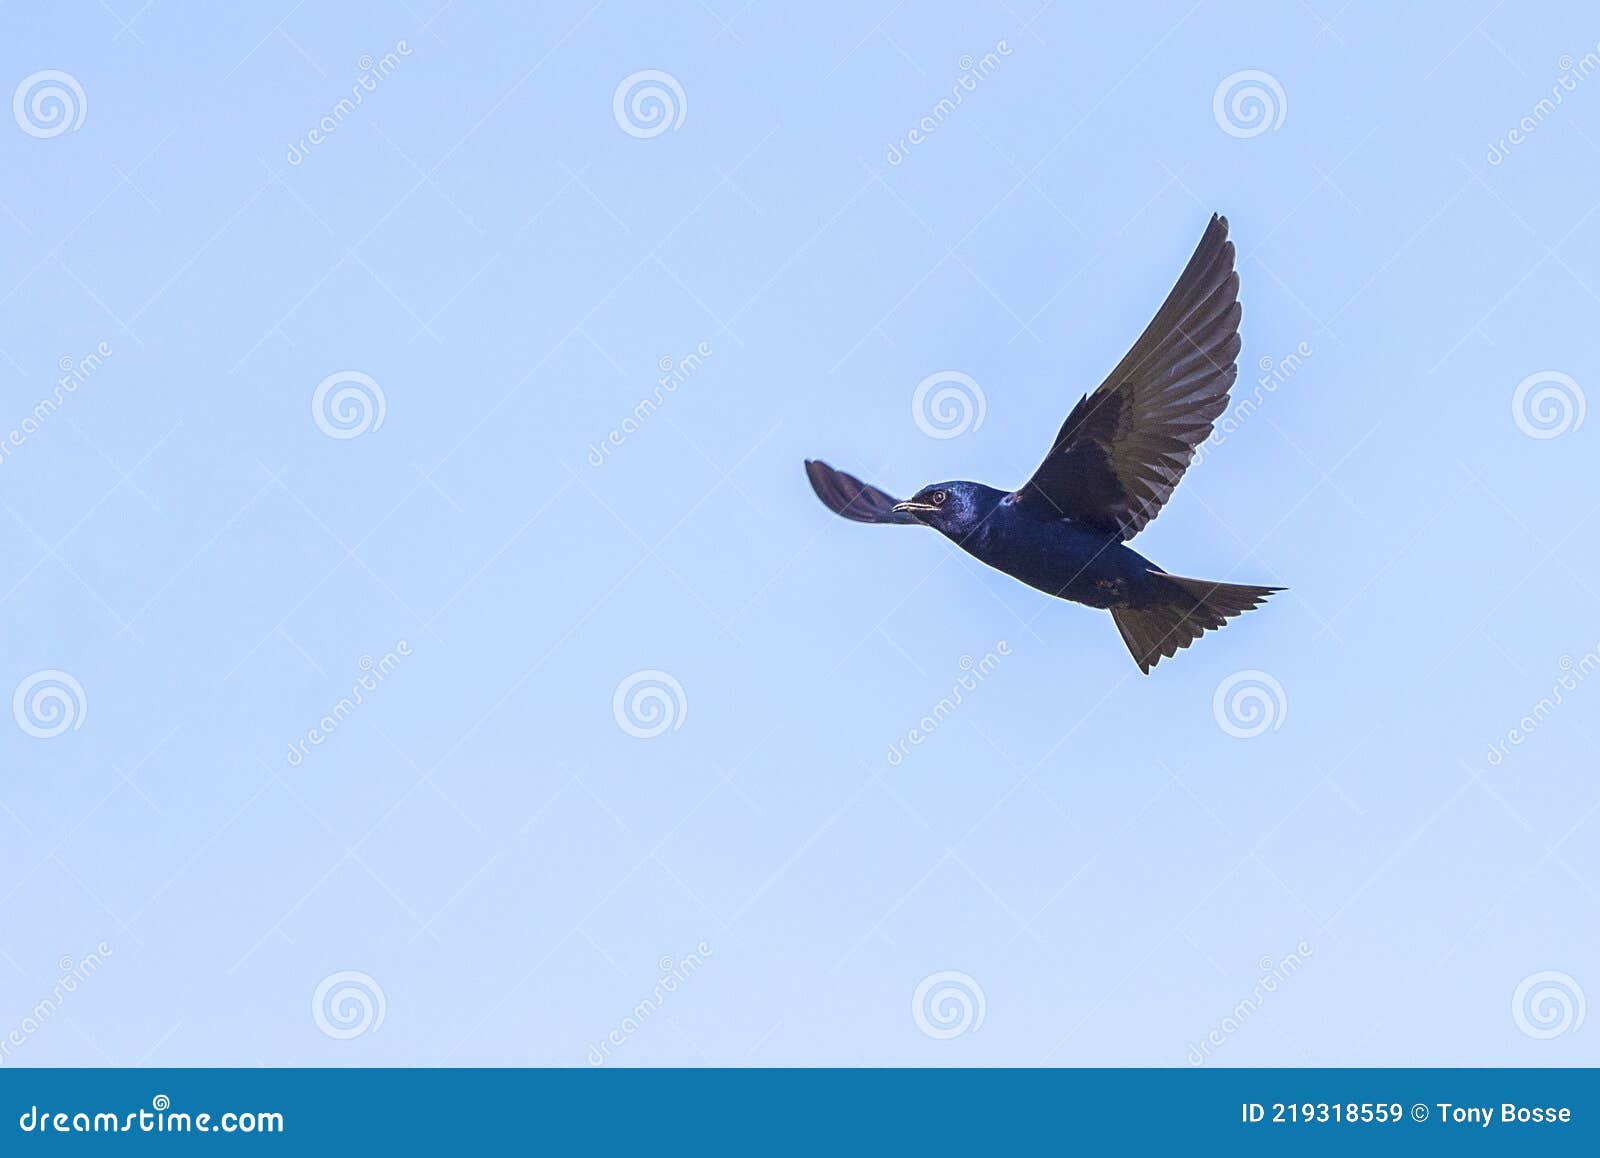 purple martin swallow in flight, wingspan